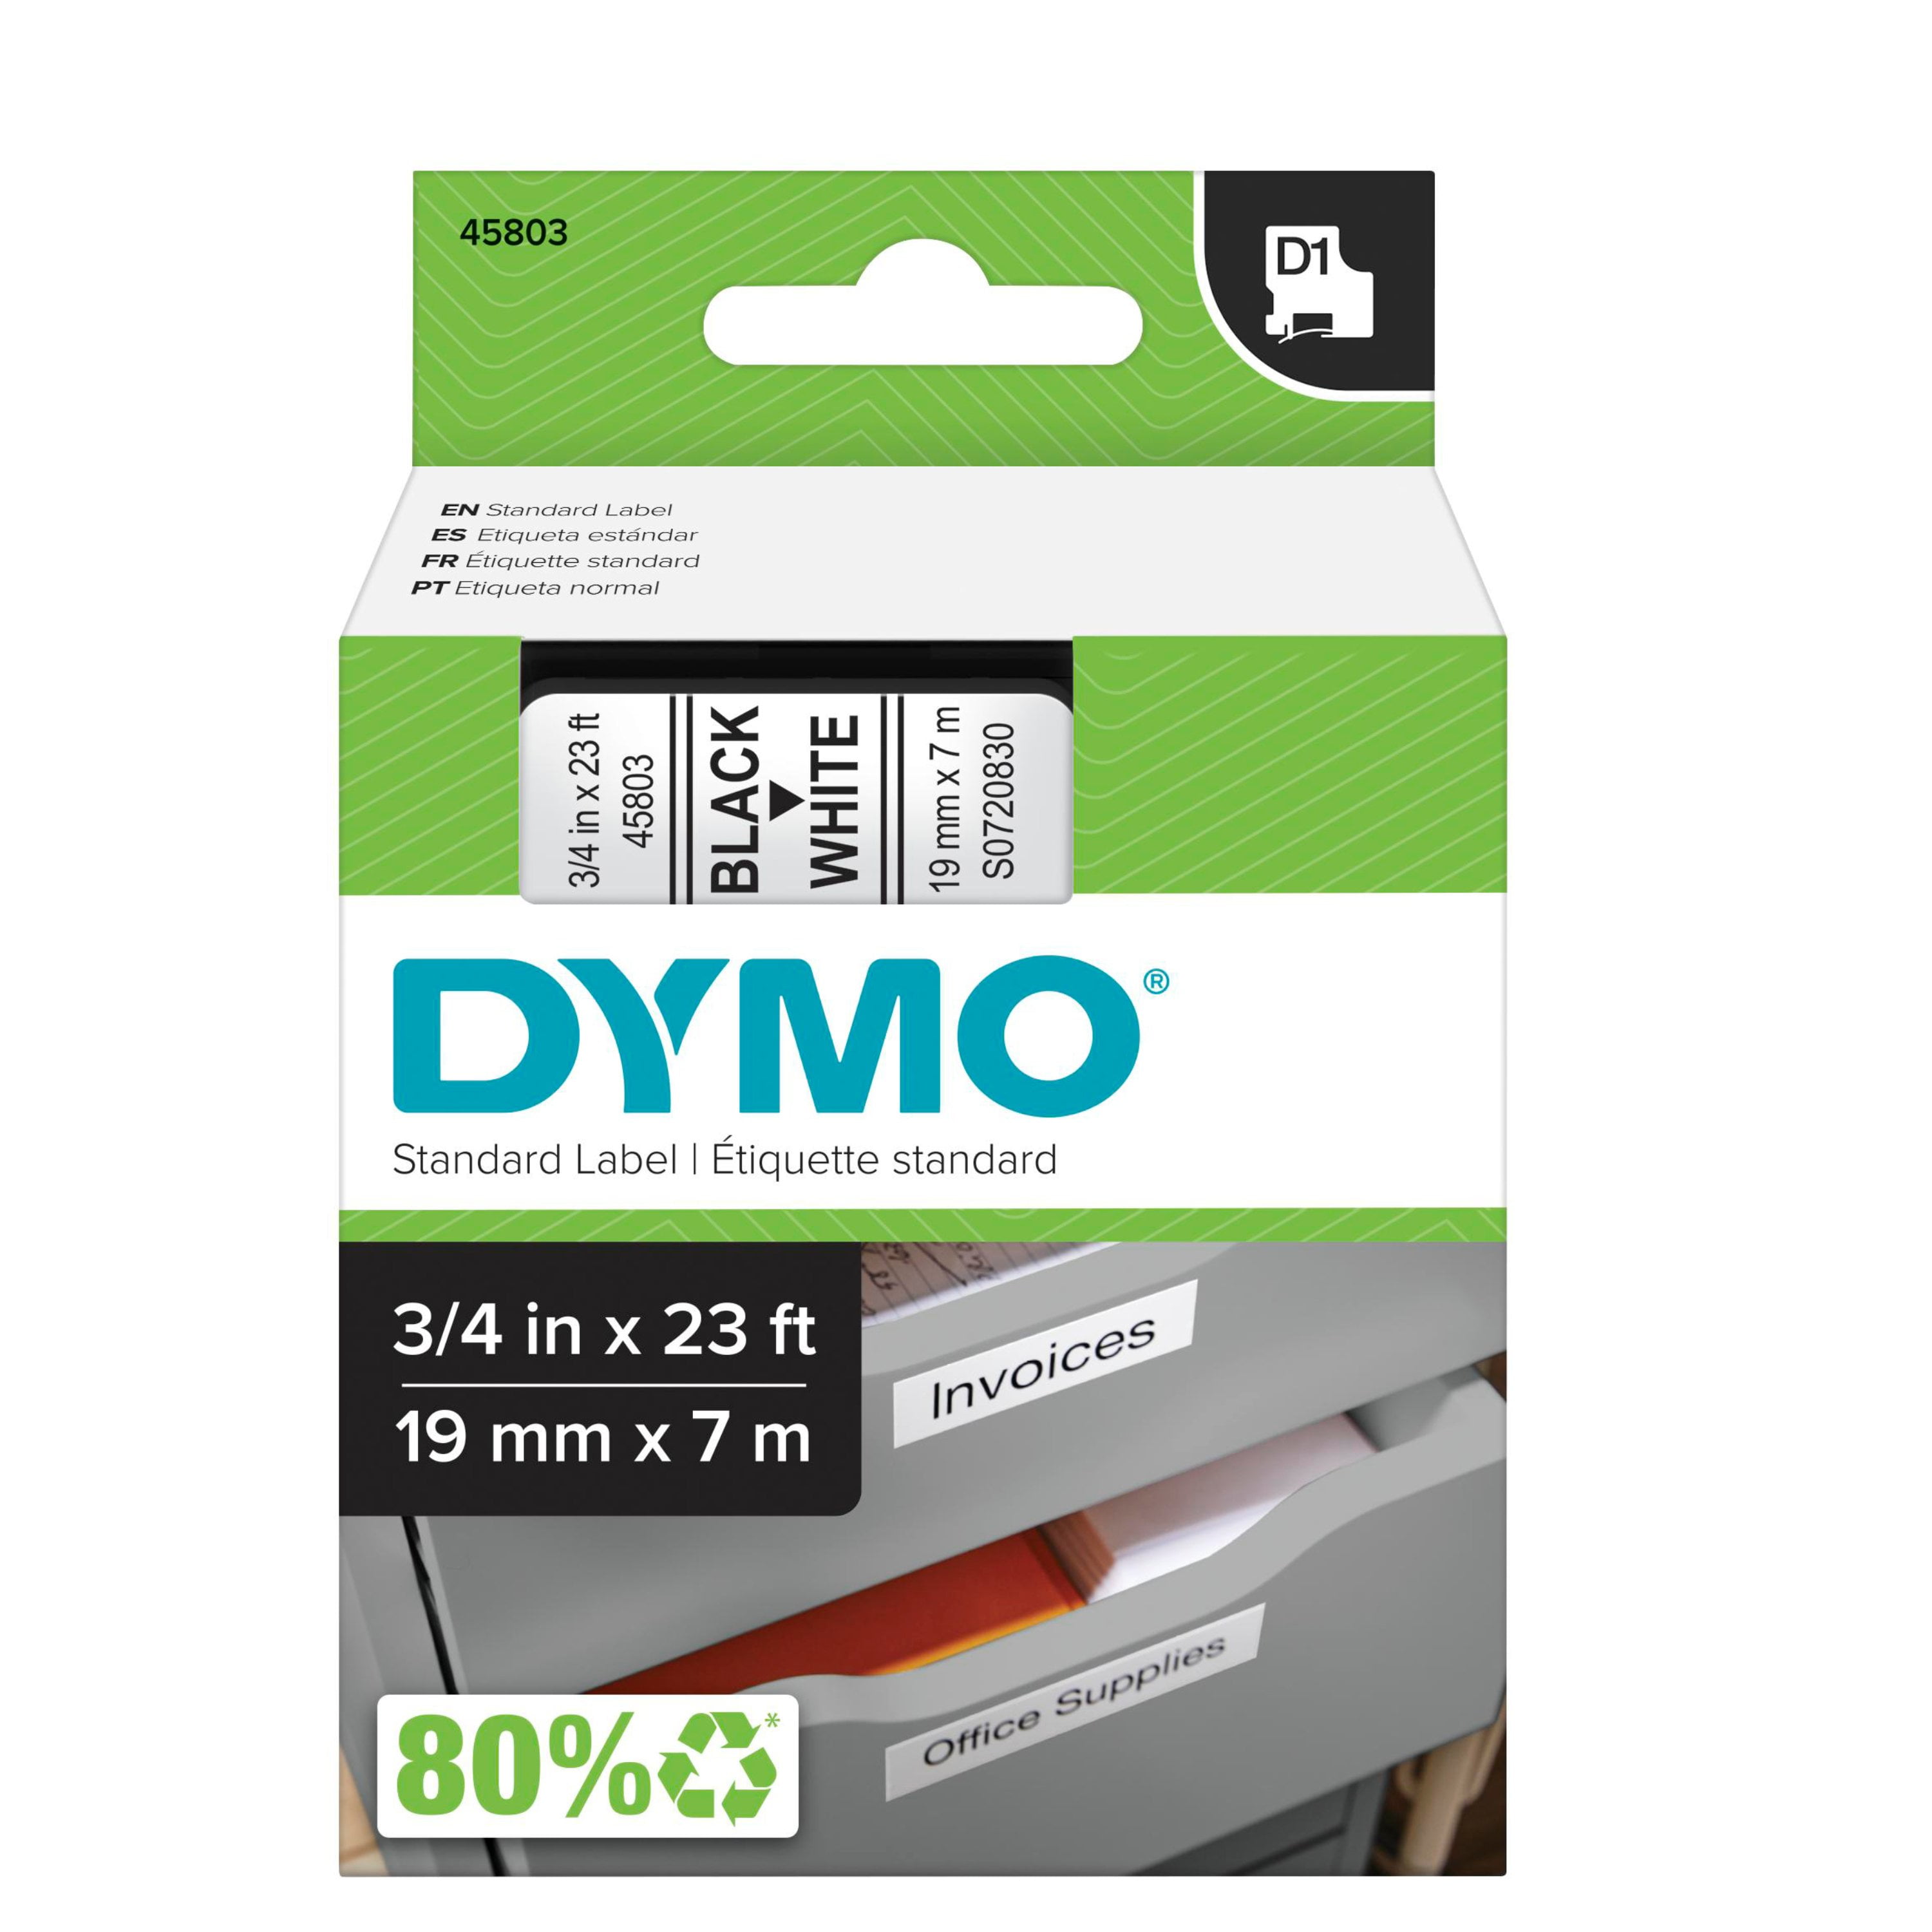 Dymo5x 91331 91332 91333 91334 91335 Label Tape Color Compatible LetraTag 1/2"